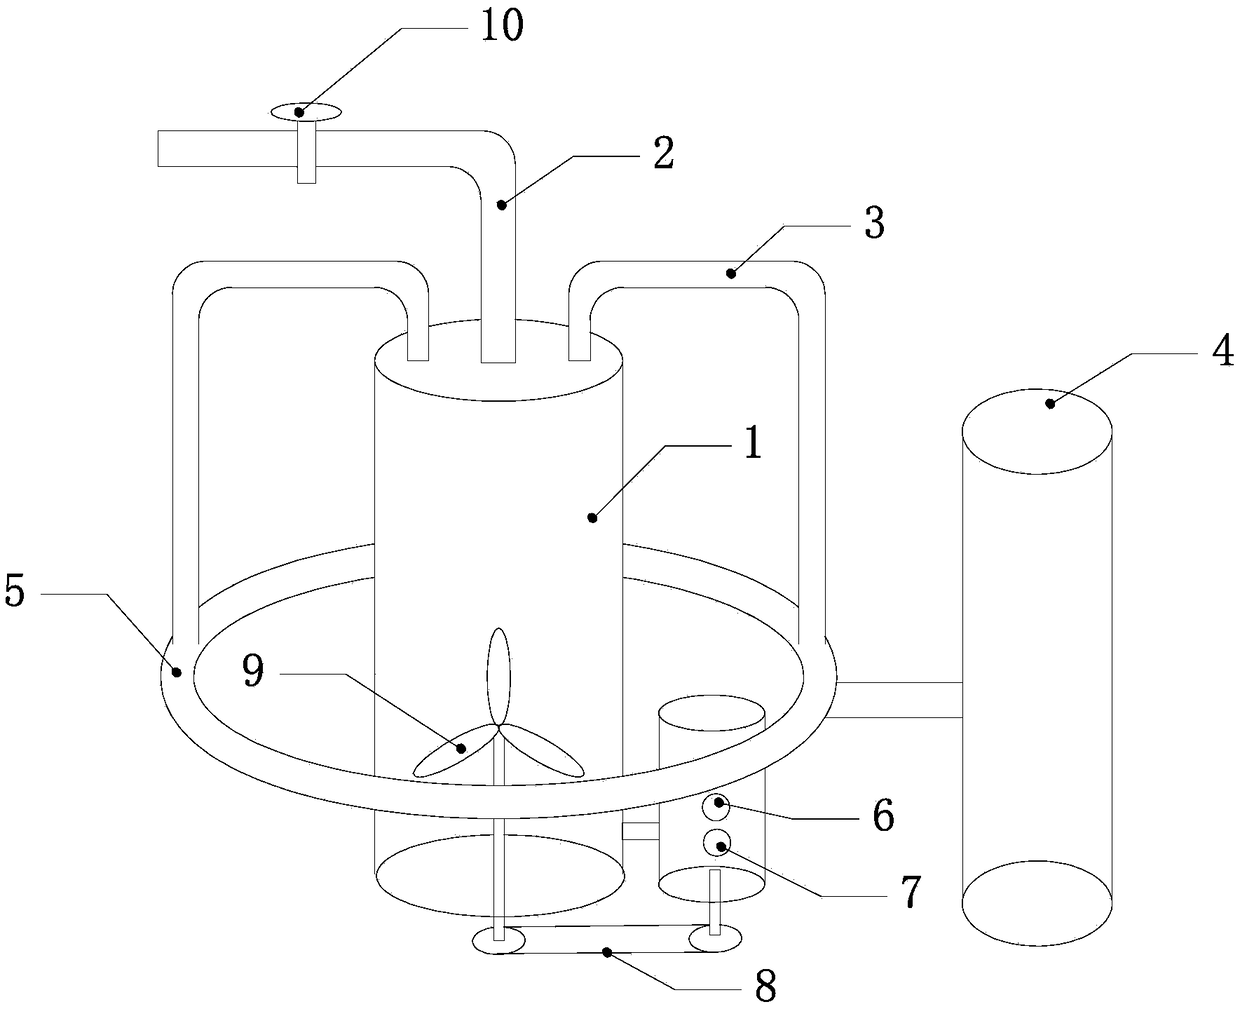 Preparation method of spirulina protein powder